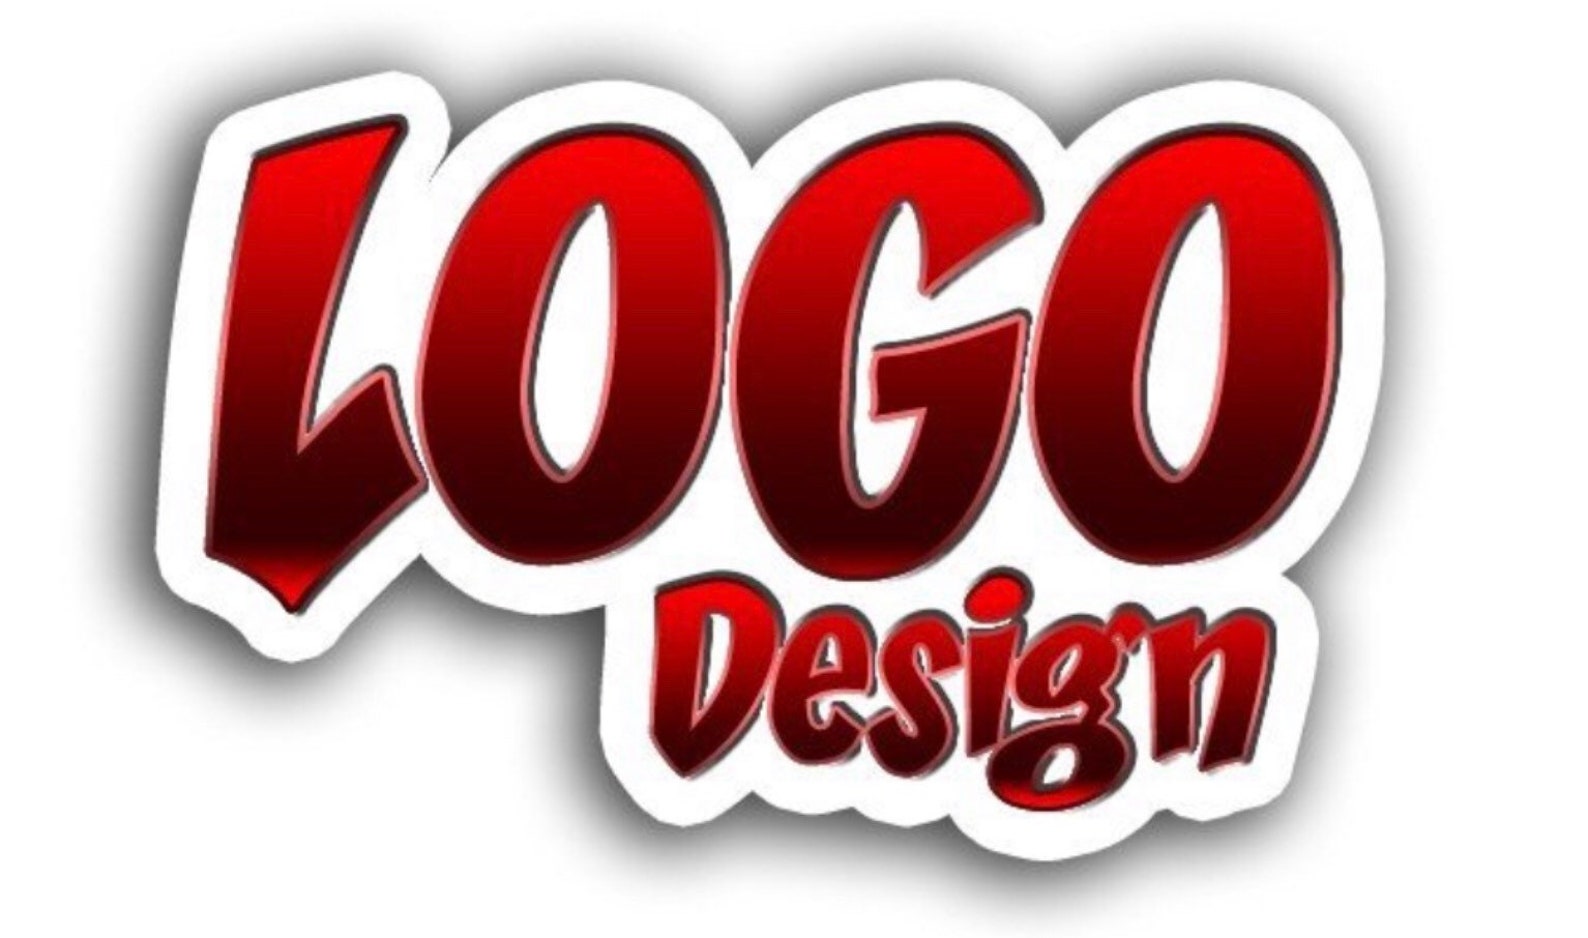 Logo Design Digitizing Vectorizing Fee - Etsy